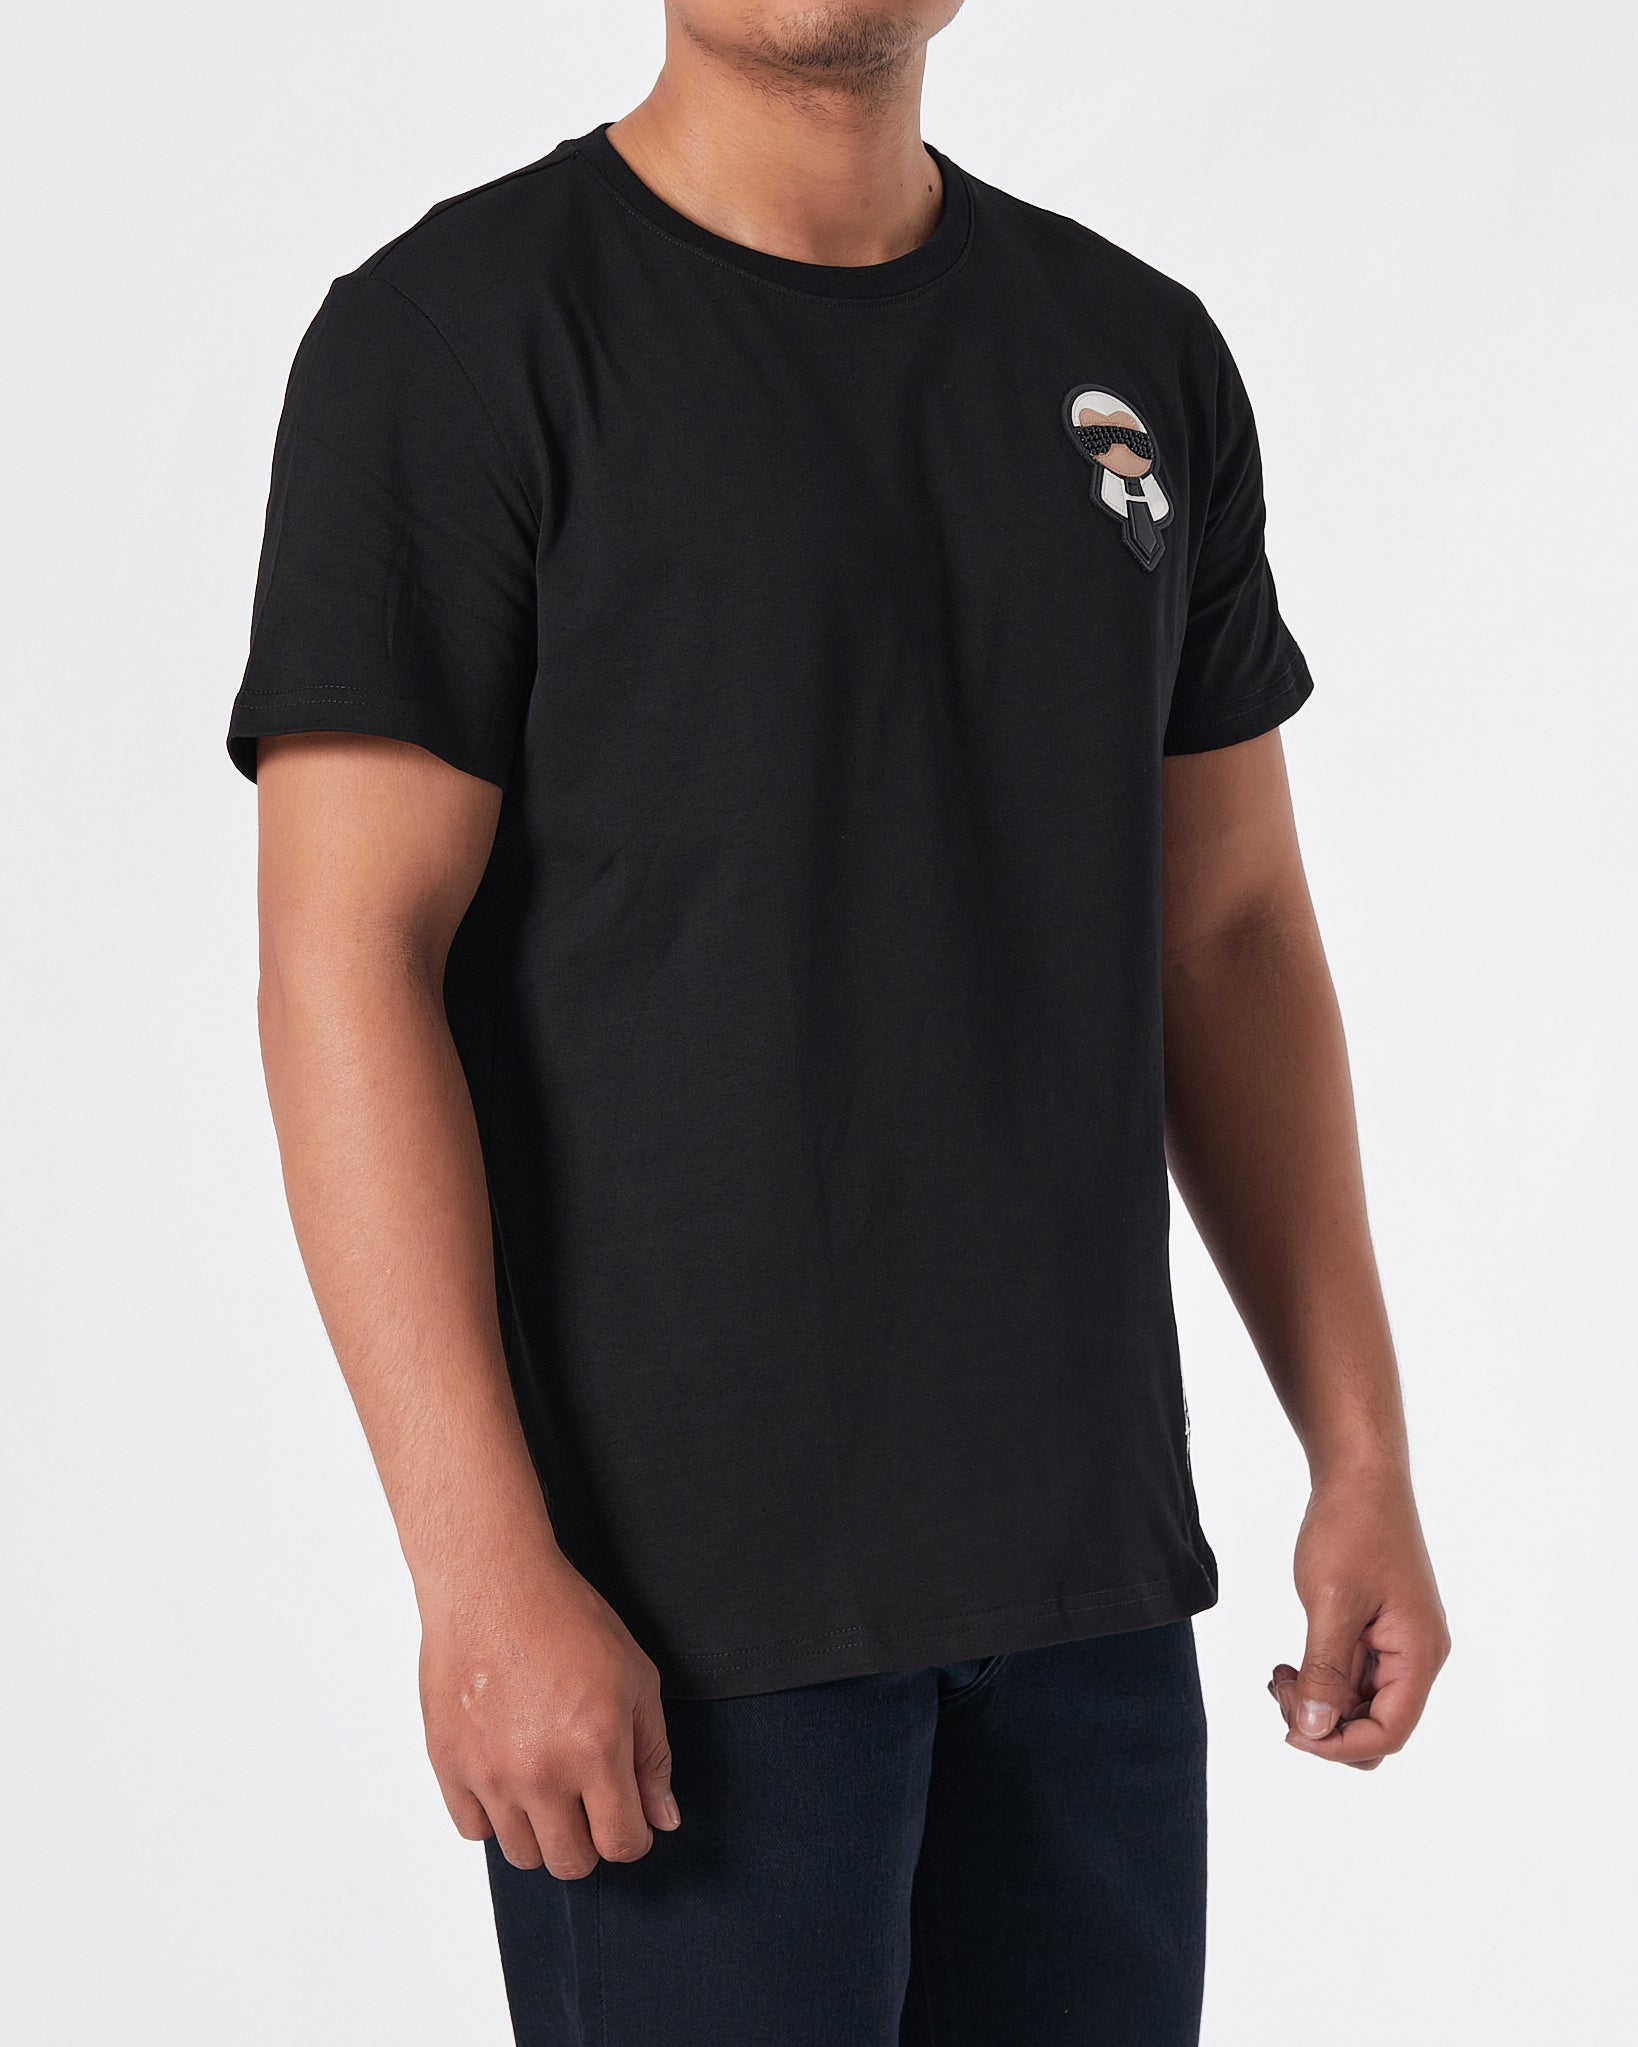 KAR Rhinestone Cartoon Men Black T-Shirt 23.90